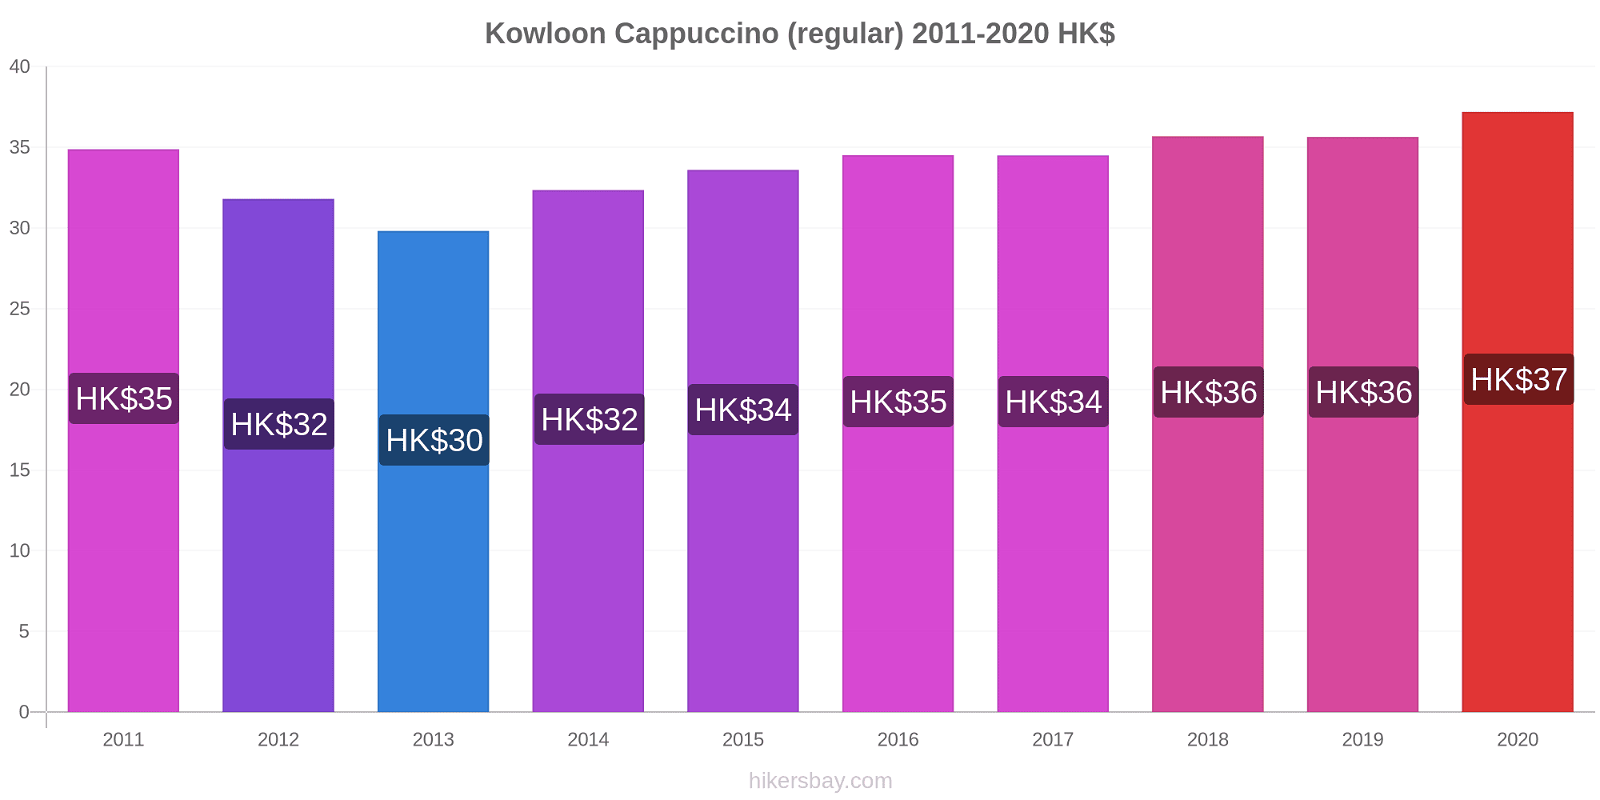 Kowloon price changes Cappuccino (regular) hikersbay.com